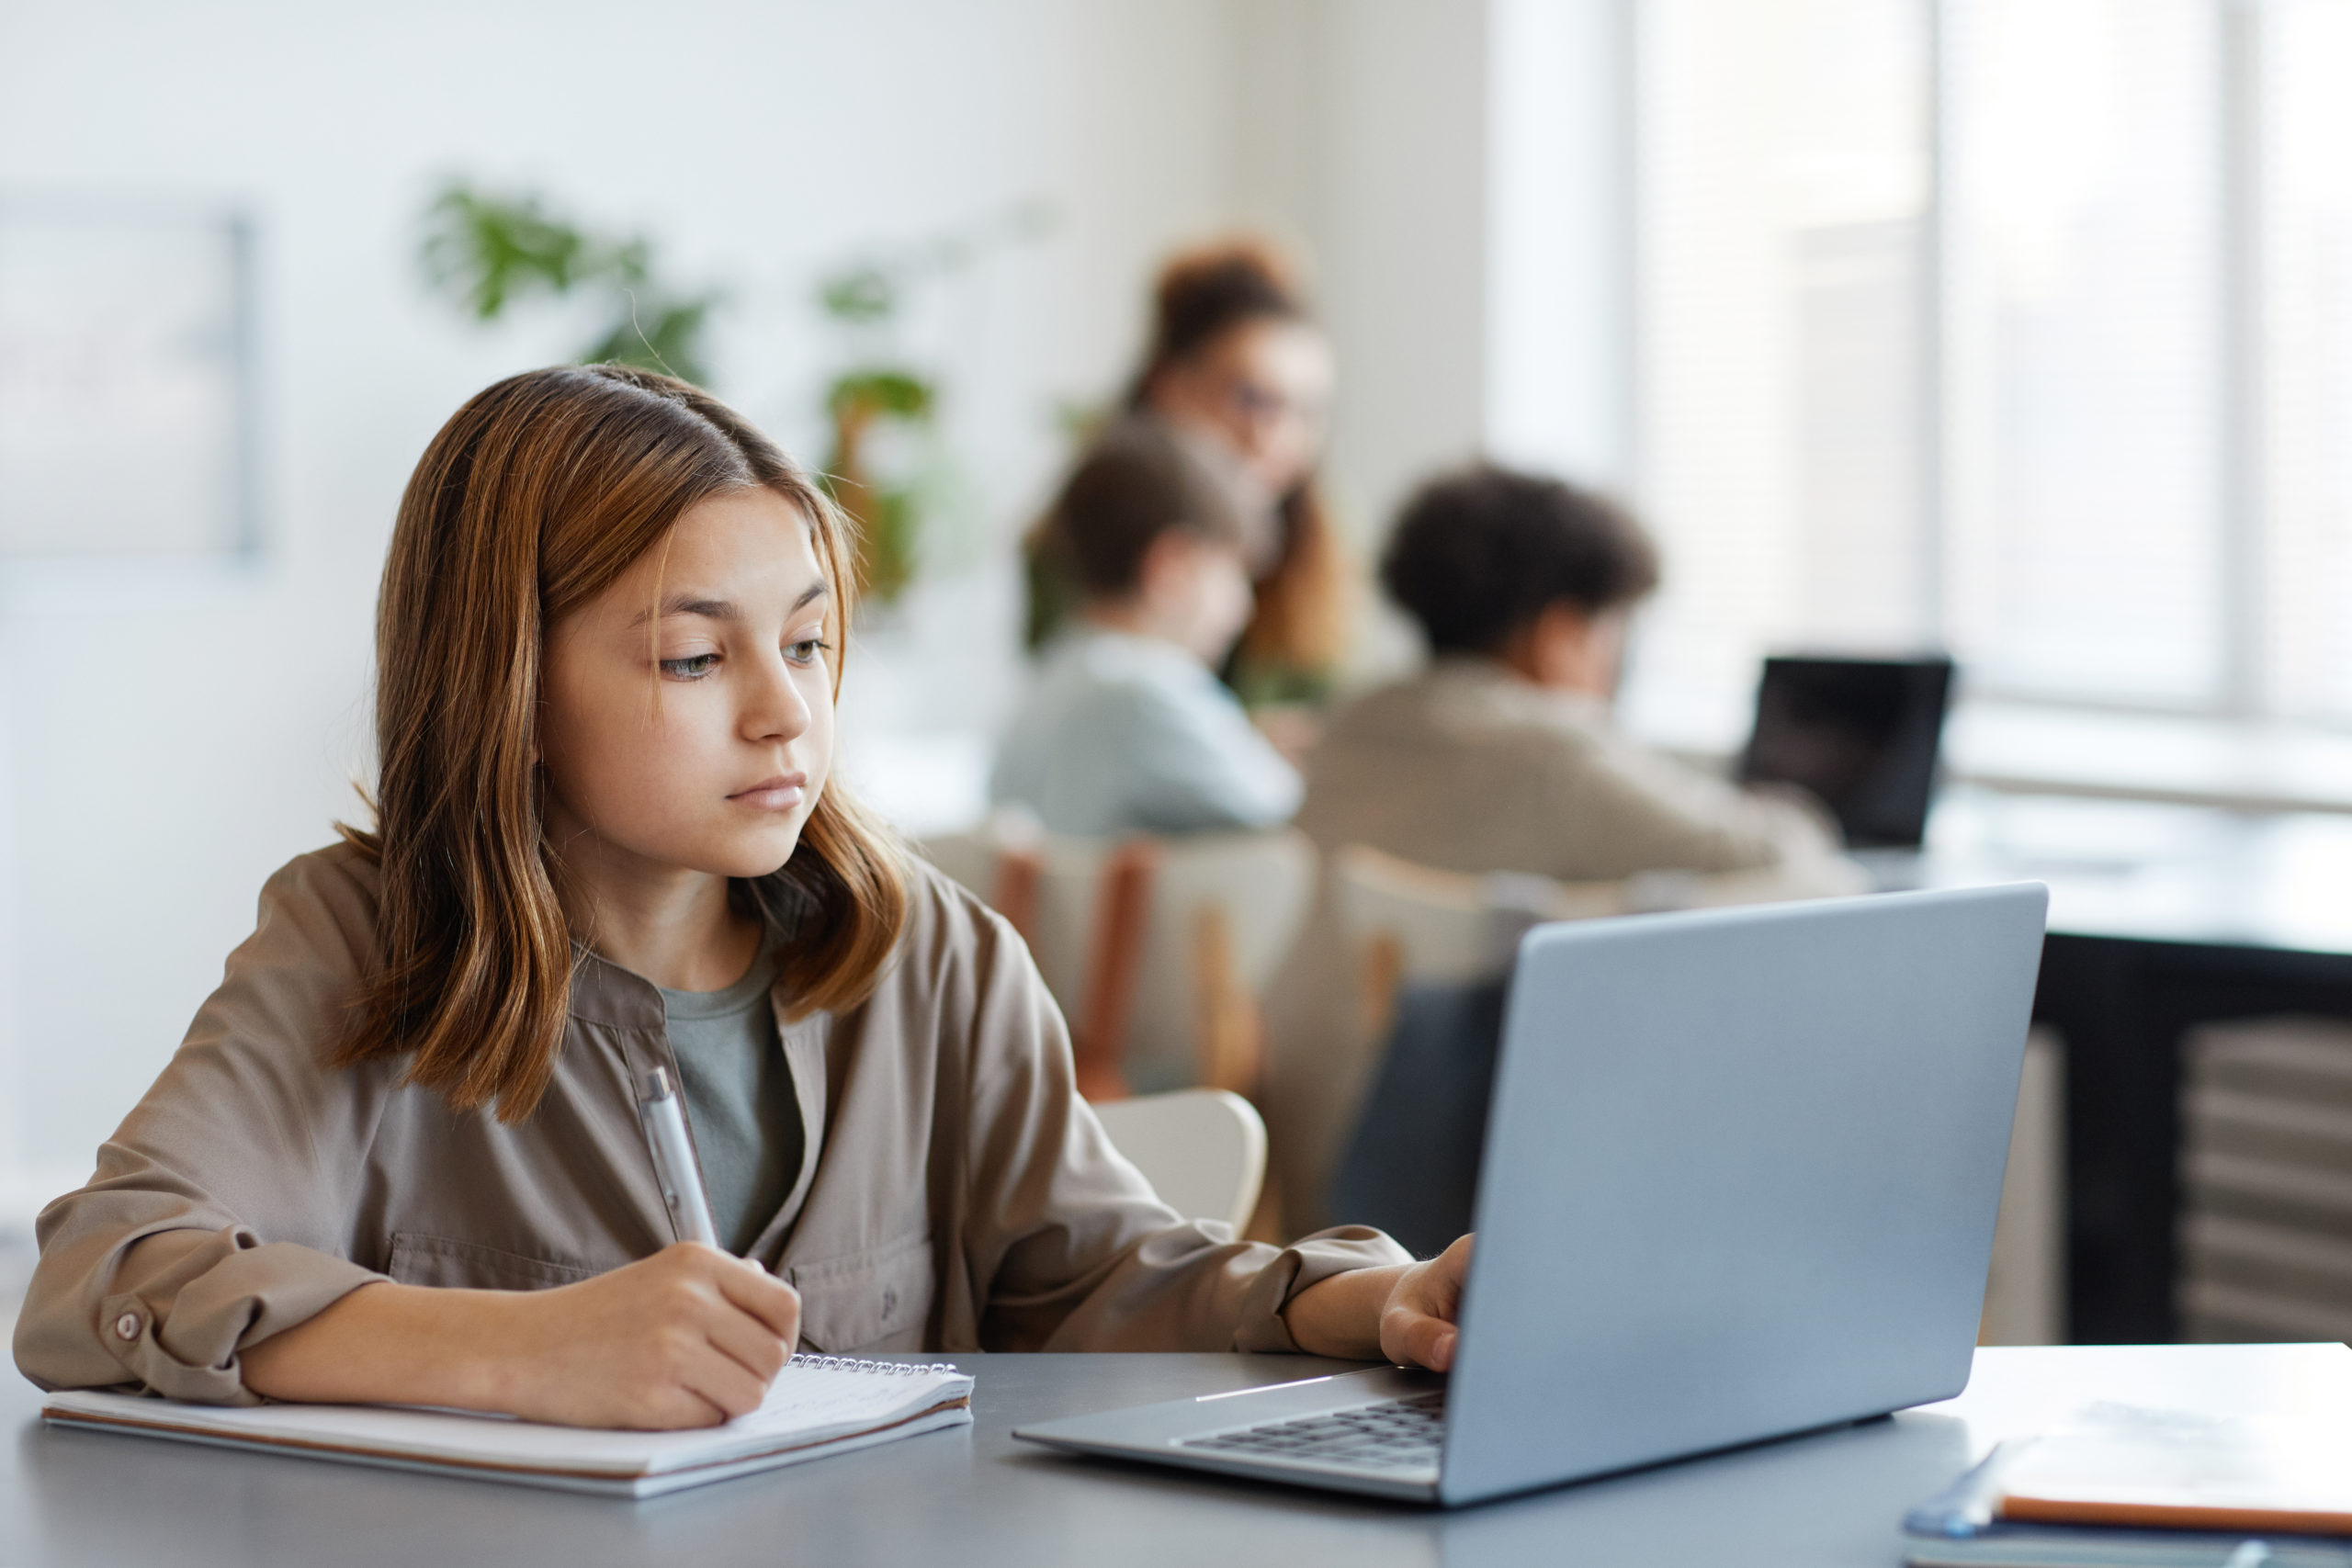 オンライン評価の結果を見るためにコンピュータを使う少女